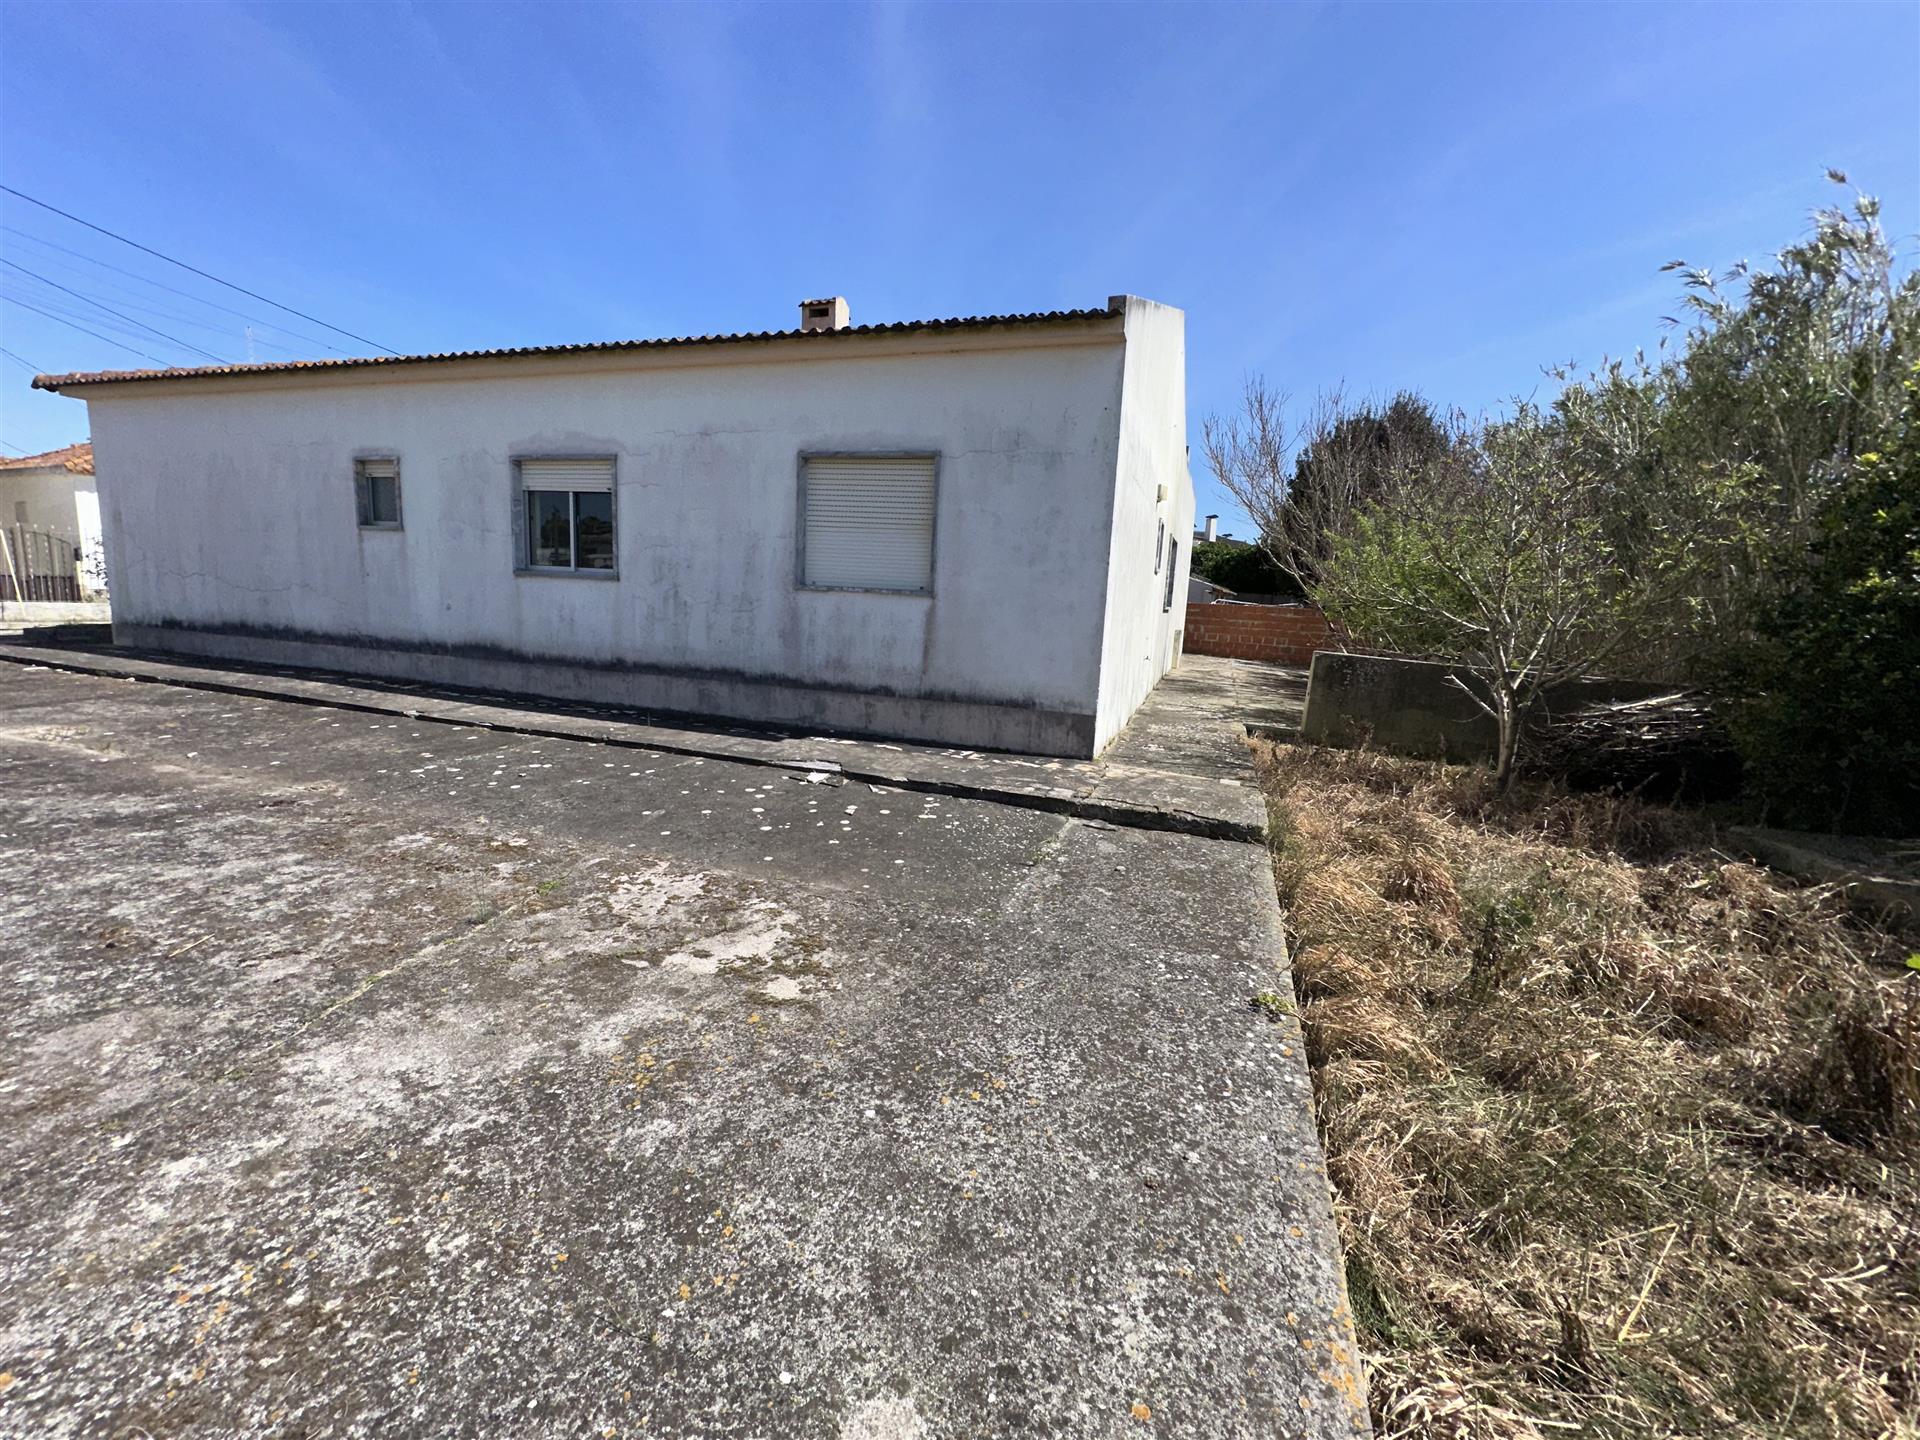 Casa con terreno, Lourinhã (centro), de una sola planta, a pocos minutos de la playa